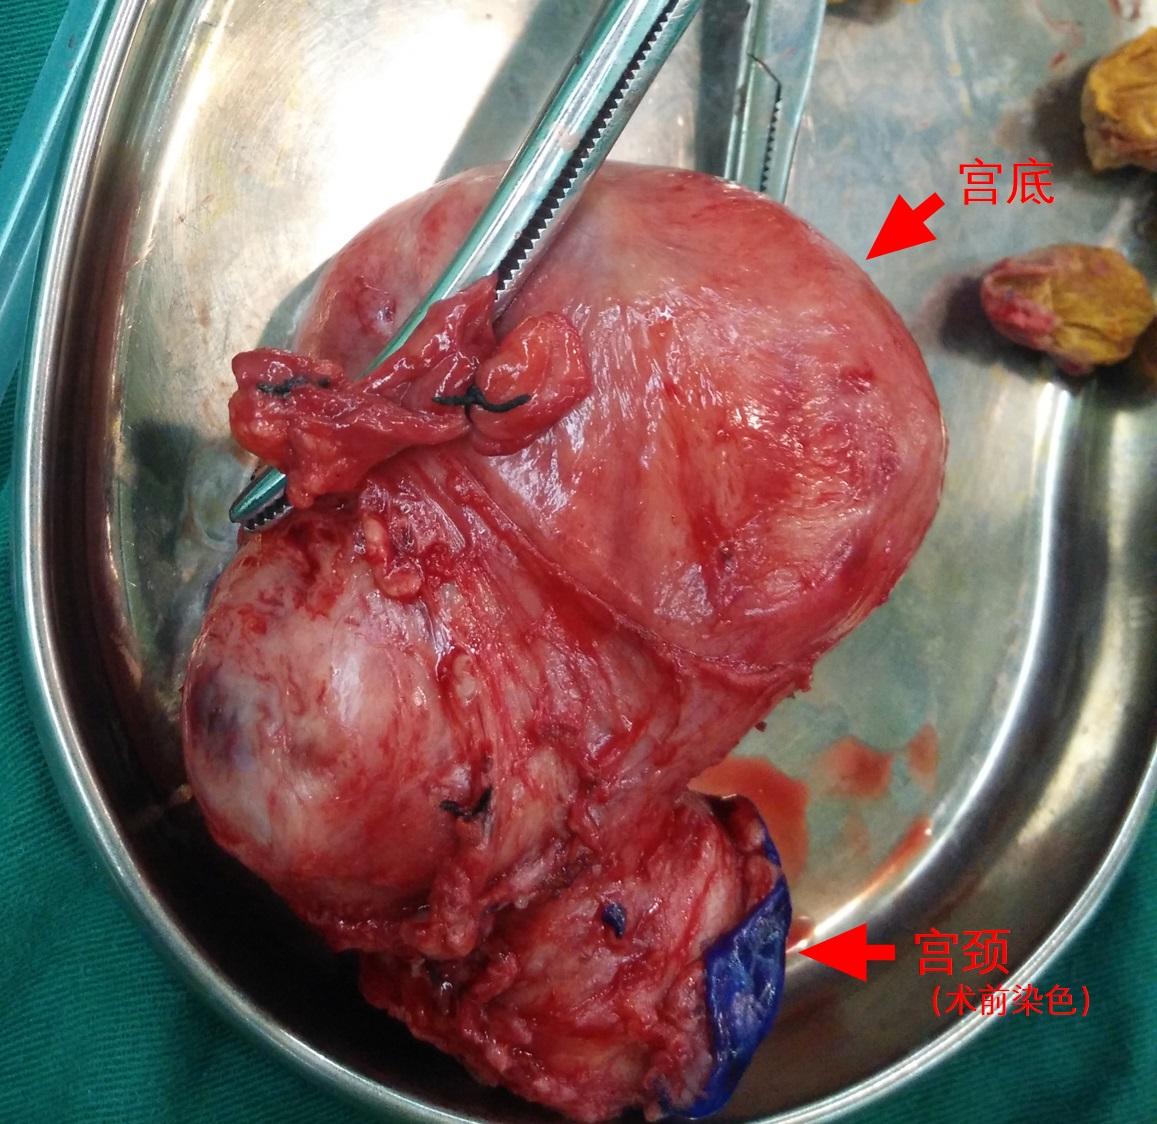 这是一个长了肌瘤的子宫,颜色和健康子宫是一样的. 2.卵巢